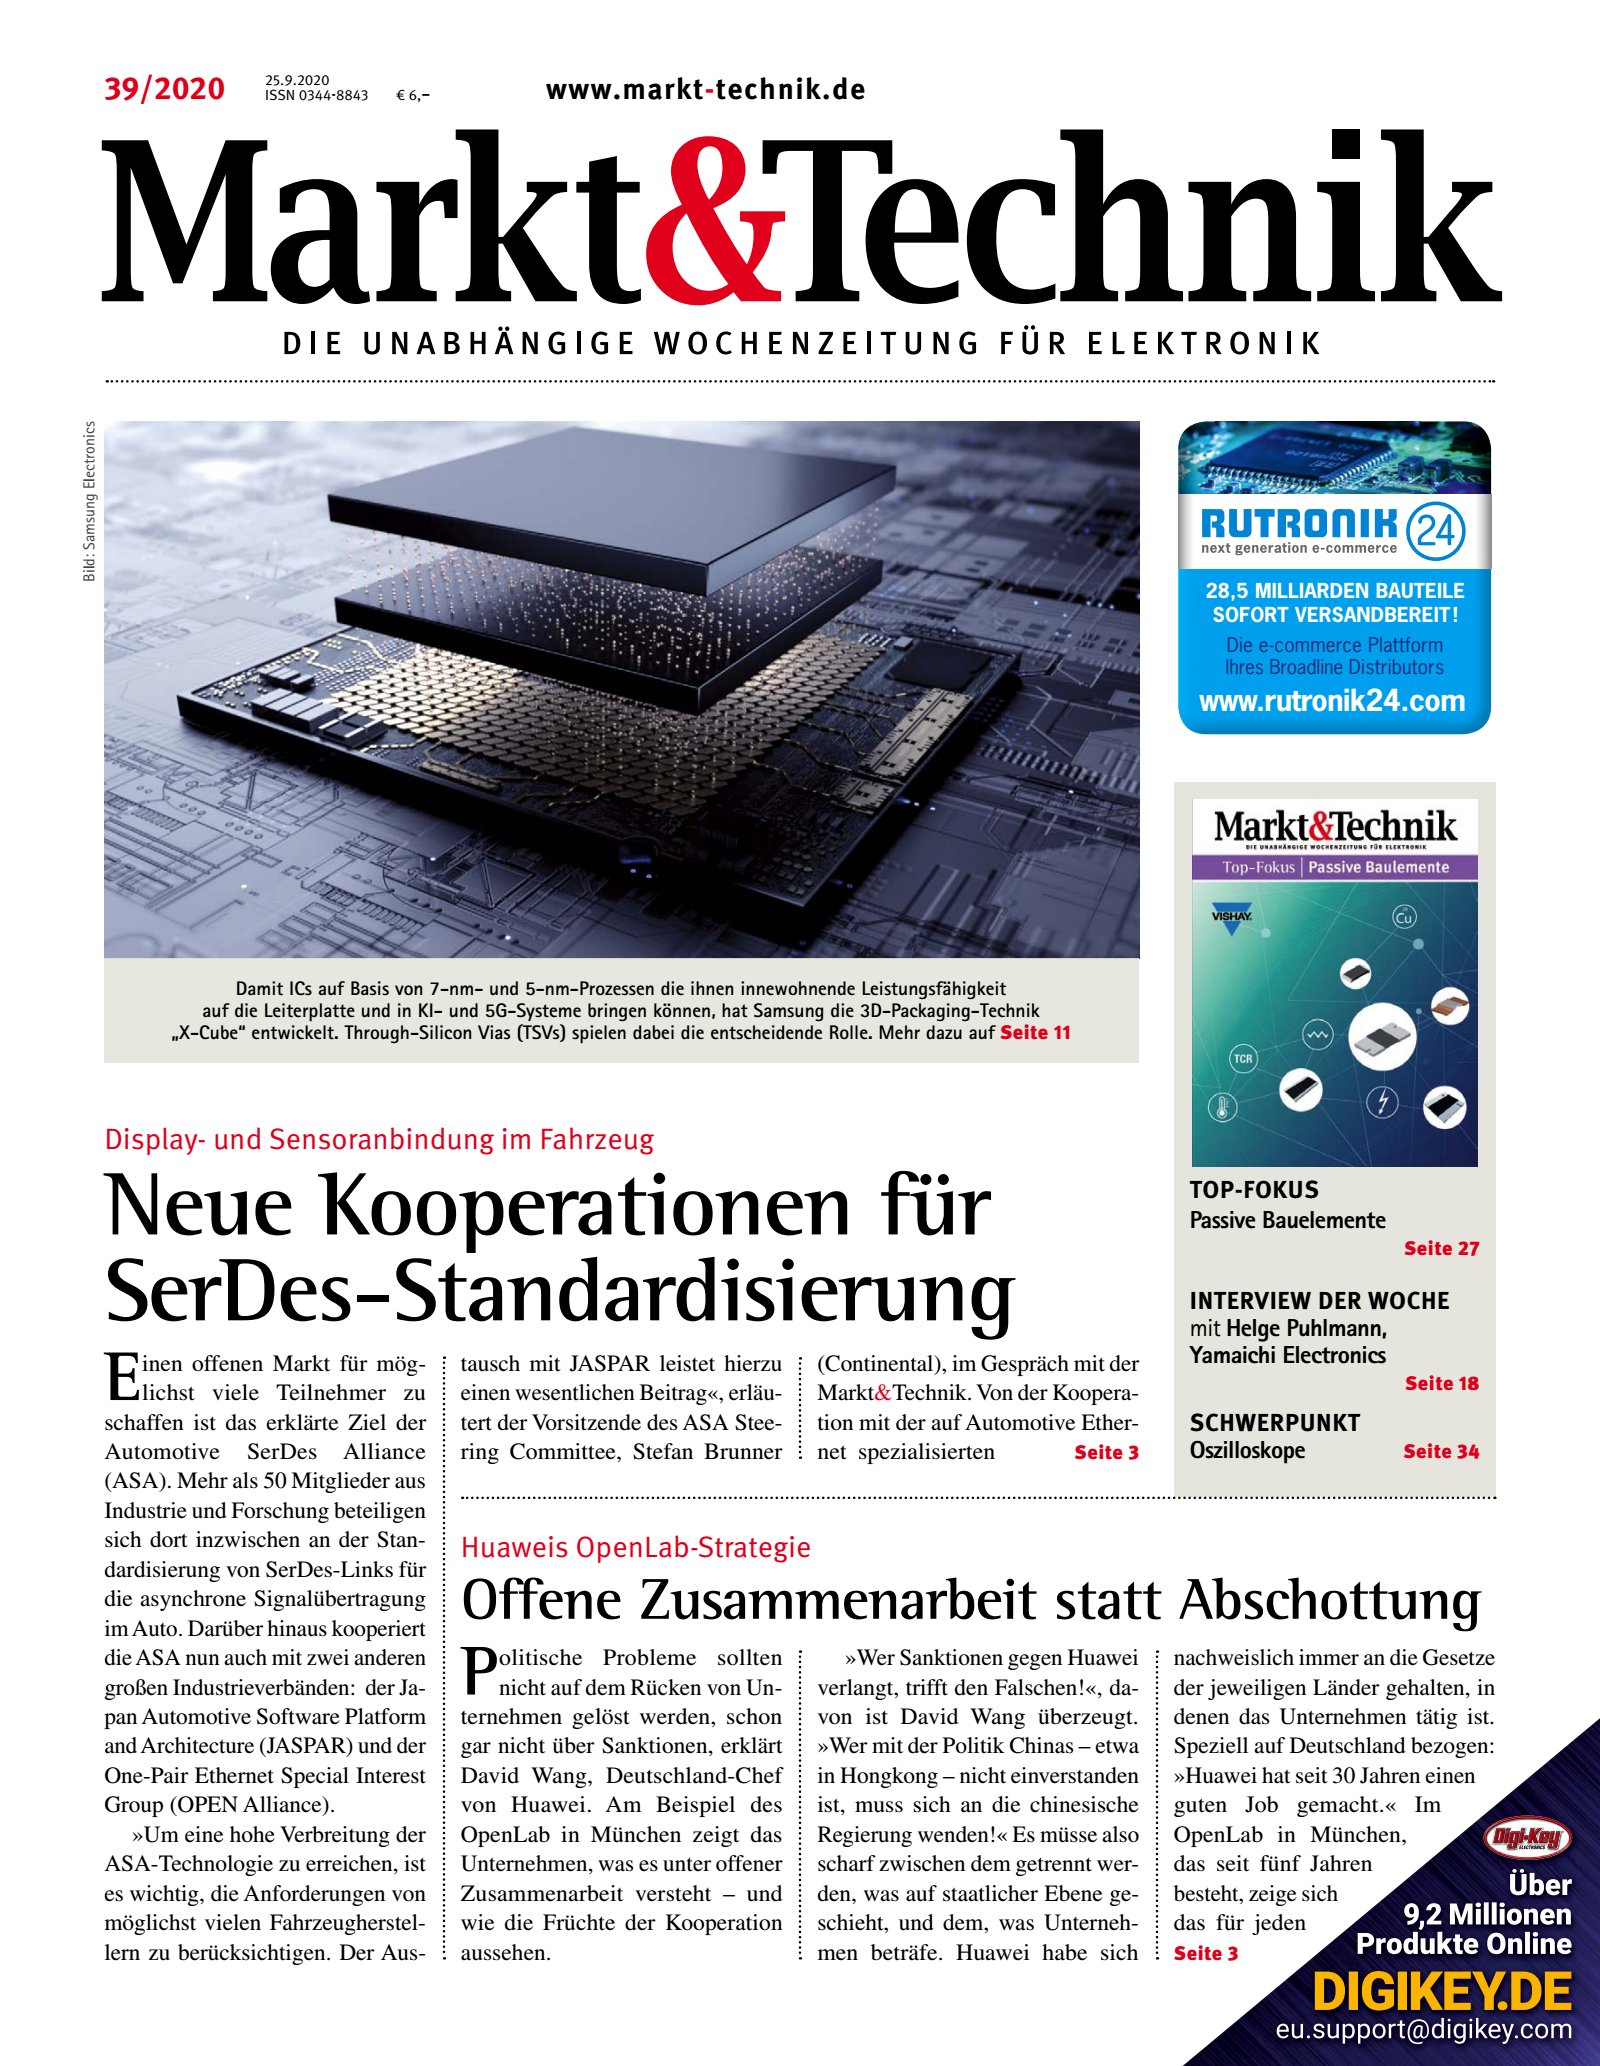 Markt&Technik 39/2020 Digital